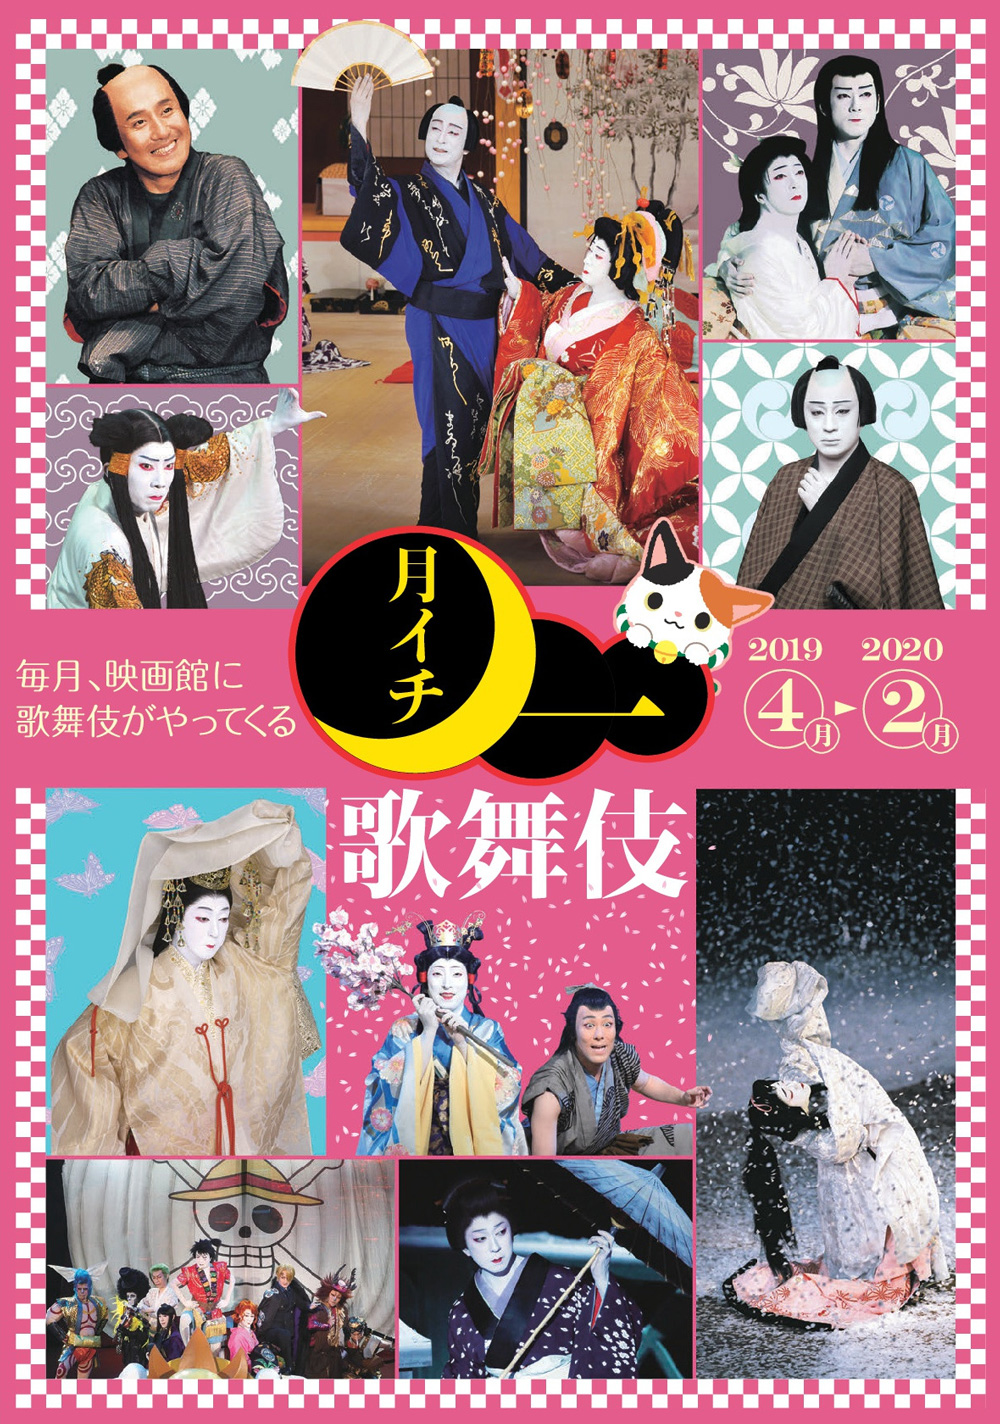 《月イチ歌舞伎》2019、上映ラインナップ発表